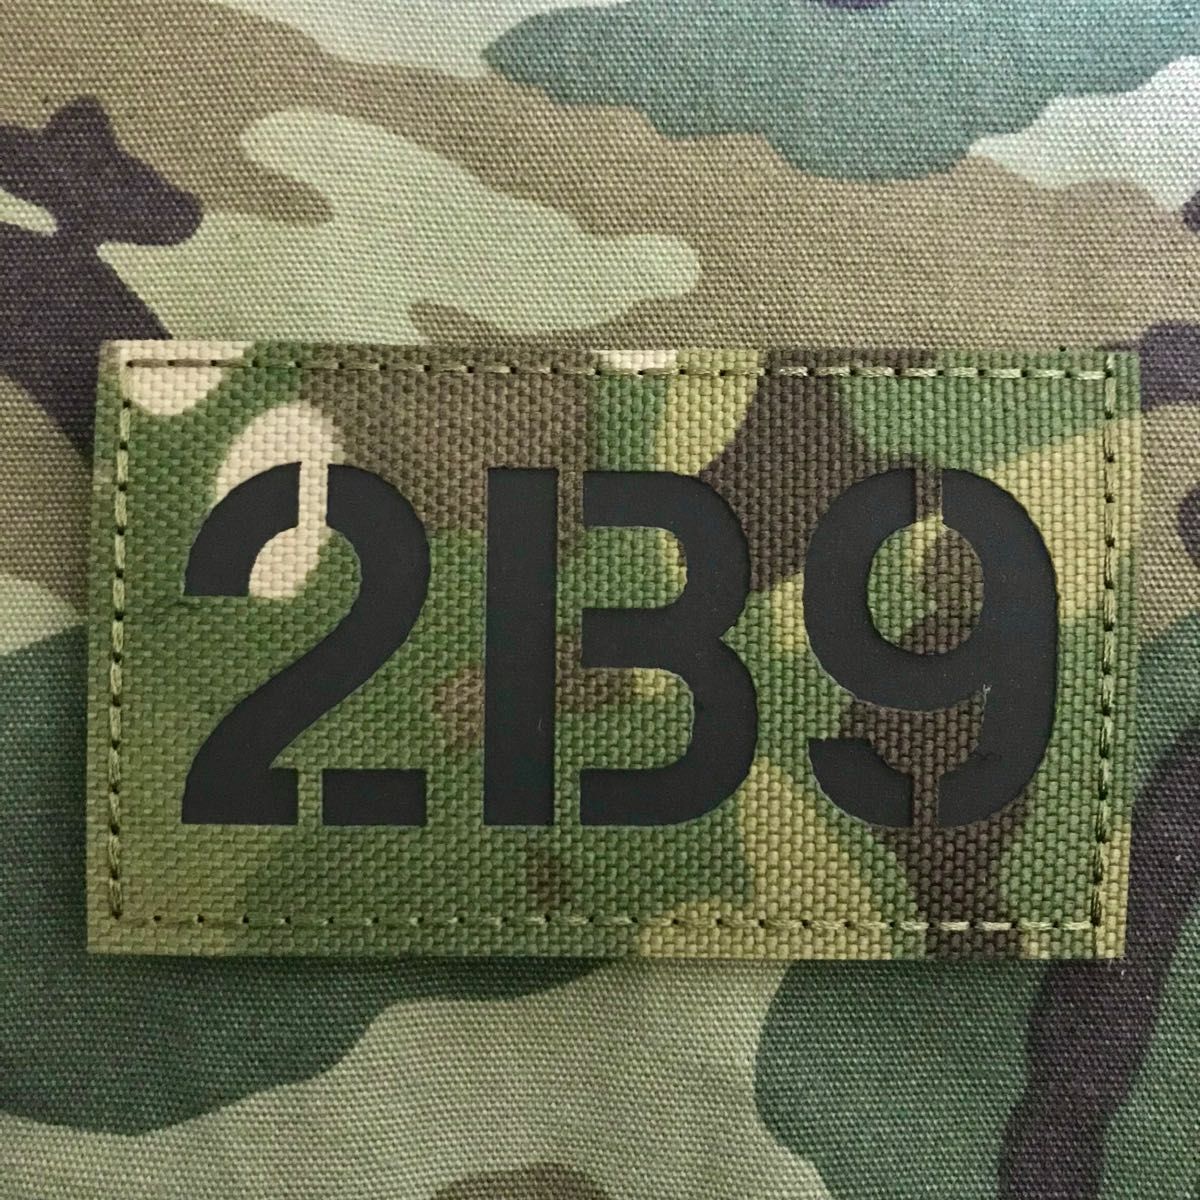 米軍 コールサイン PVCラバー ミリタリー パッチ 2B9 カモフラ サバゲー